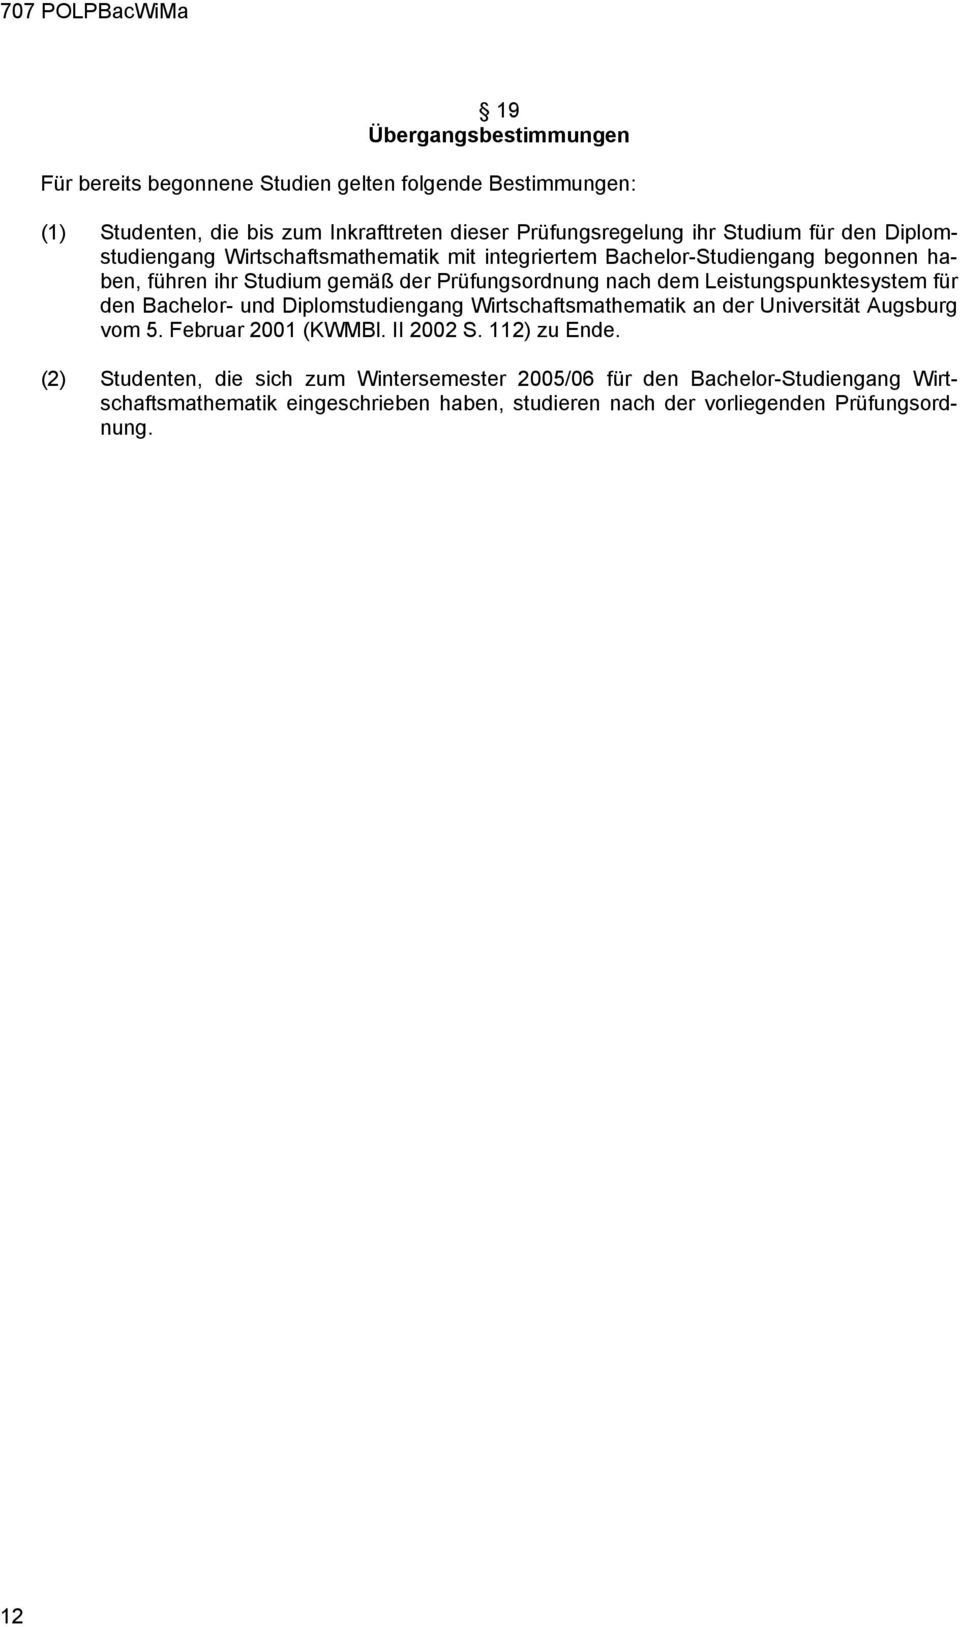 Leistungspunktesystem für den Bachelor- und Diplomstudiengang Wirtschaftsmathematik an der Universität Augsburg vom 5. Februar 2001 (KWMBl. II 2002 S. 112) zu Ende.